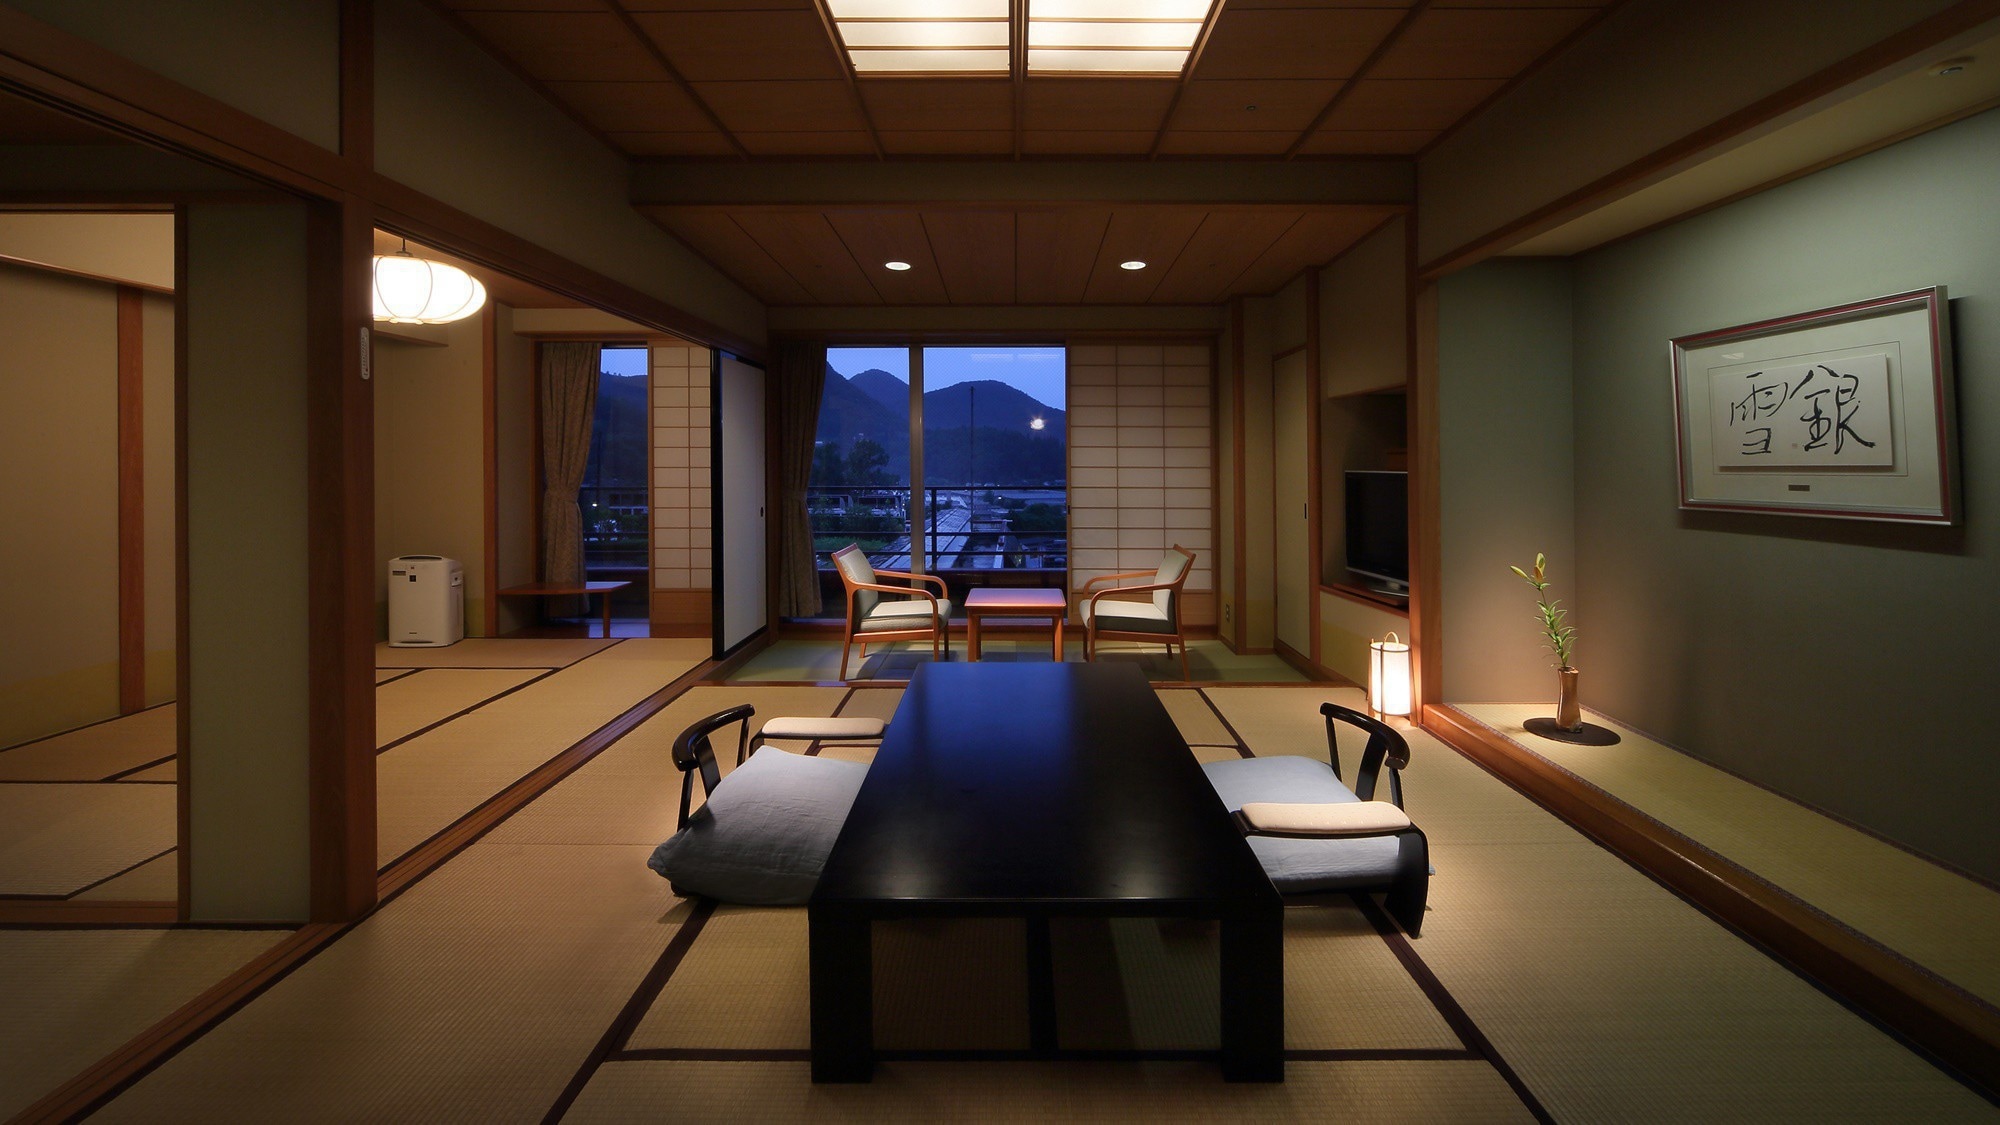 【日式房間10張榻榻米+6張榻榻米】10張榻榻米的日式房間和6張榻榻米的寬敞隔壁房間。與家人和朋友一起放鬆。